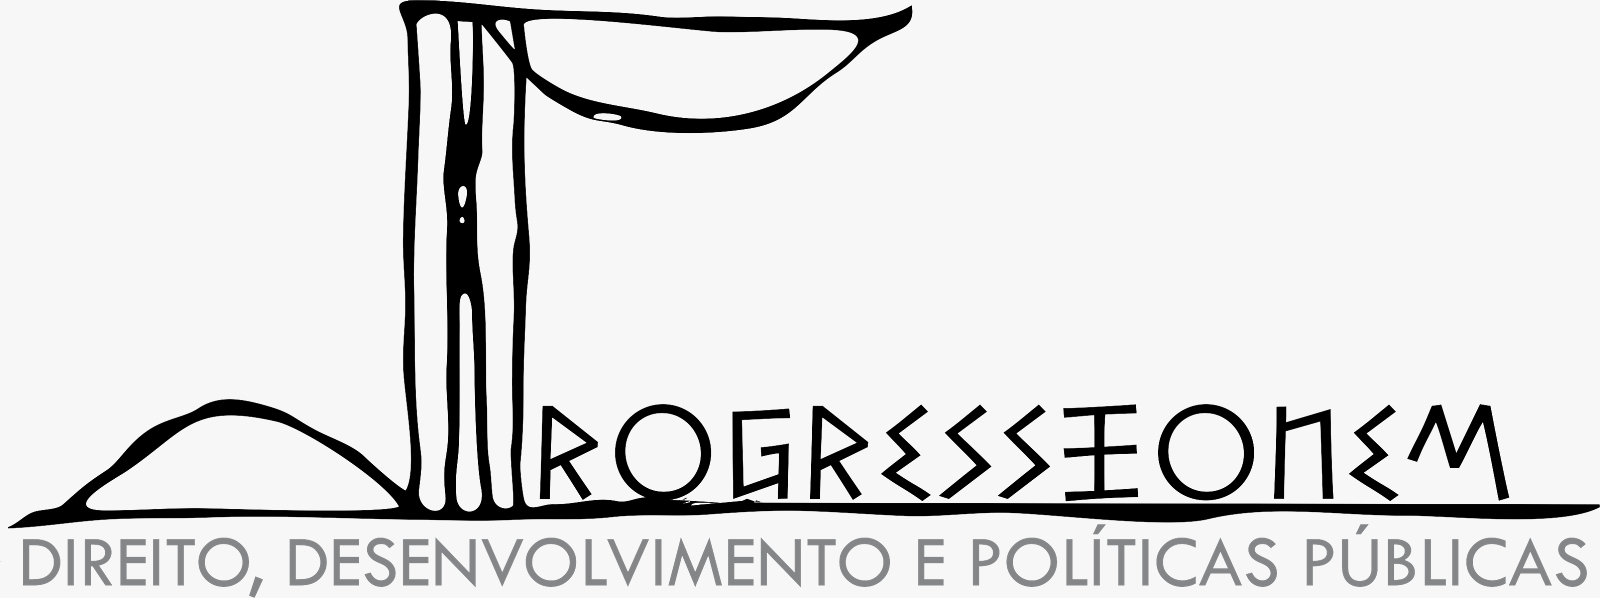 Direito, Desenvolvimento e Políticas Públicas - Progressionem